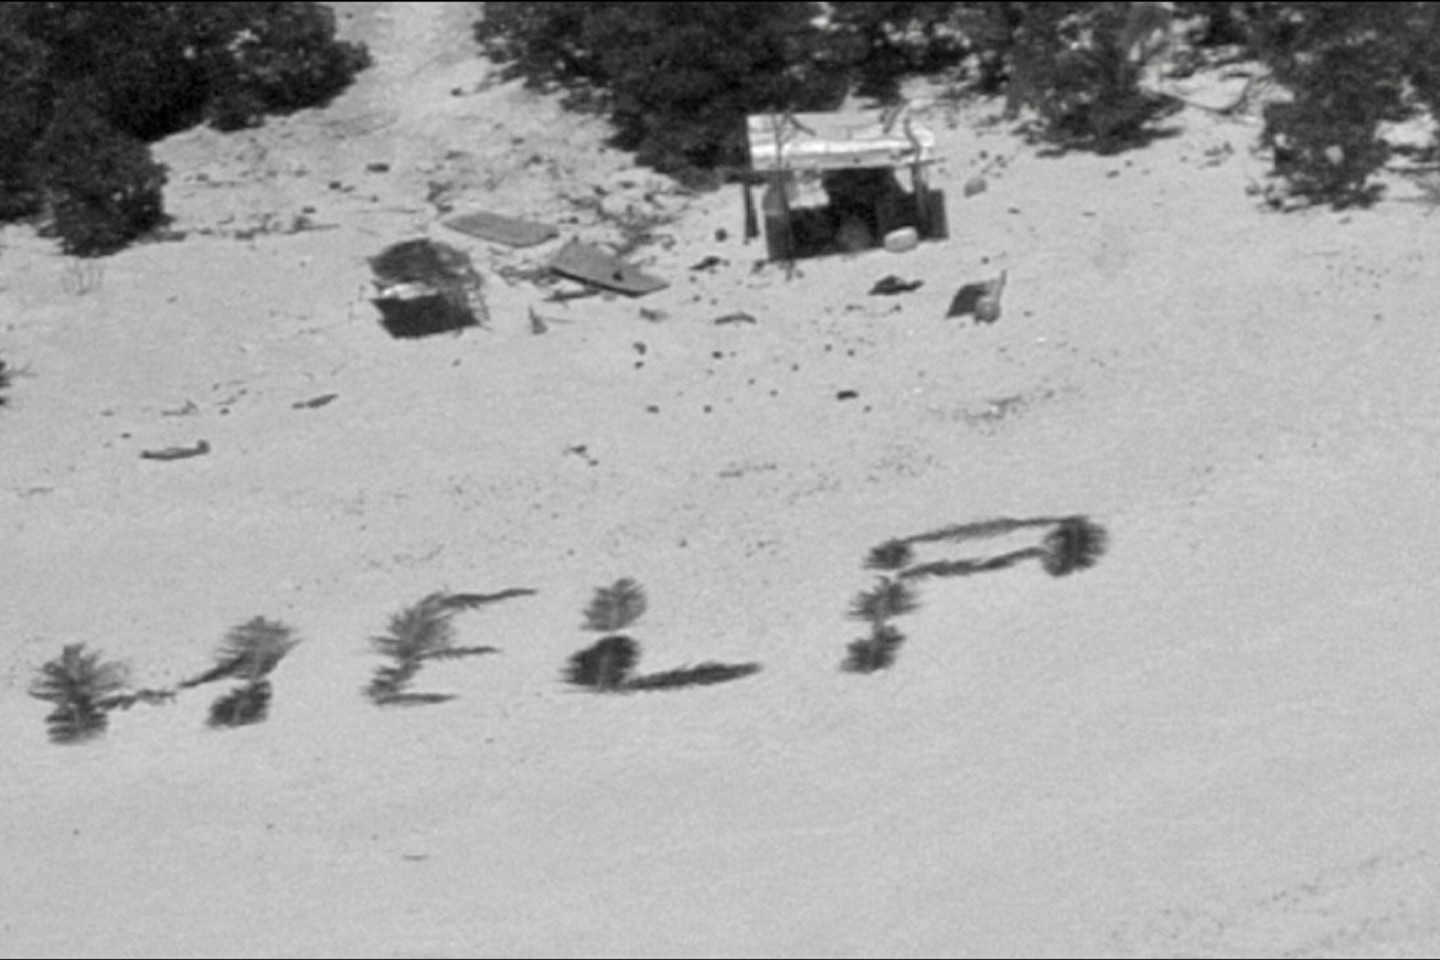 «Bemerkenswertes Zeugnis ihres Willens, gefunden zu werden»: «Help» mit Palmwedeln auf Sand geschrieben.